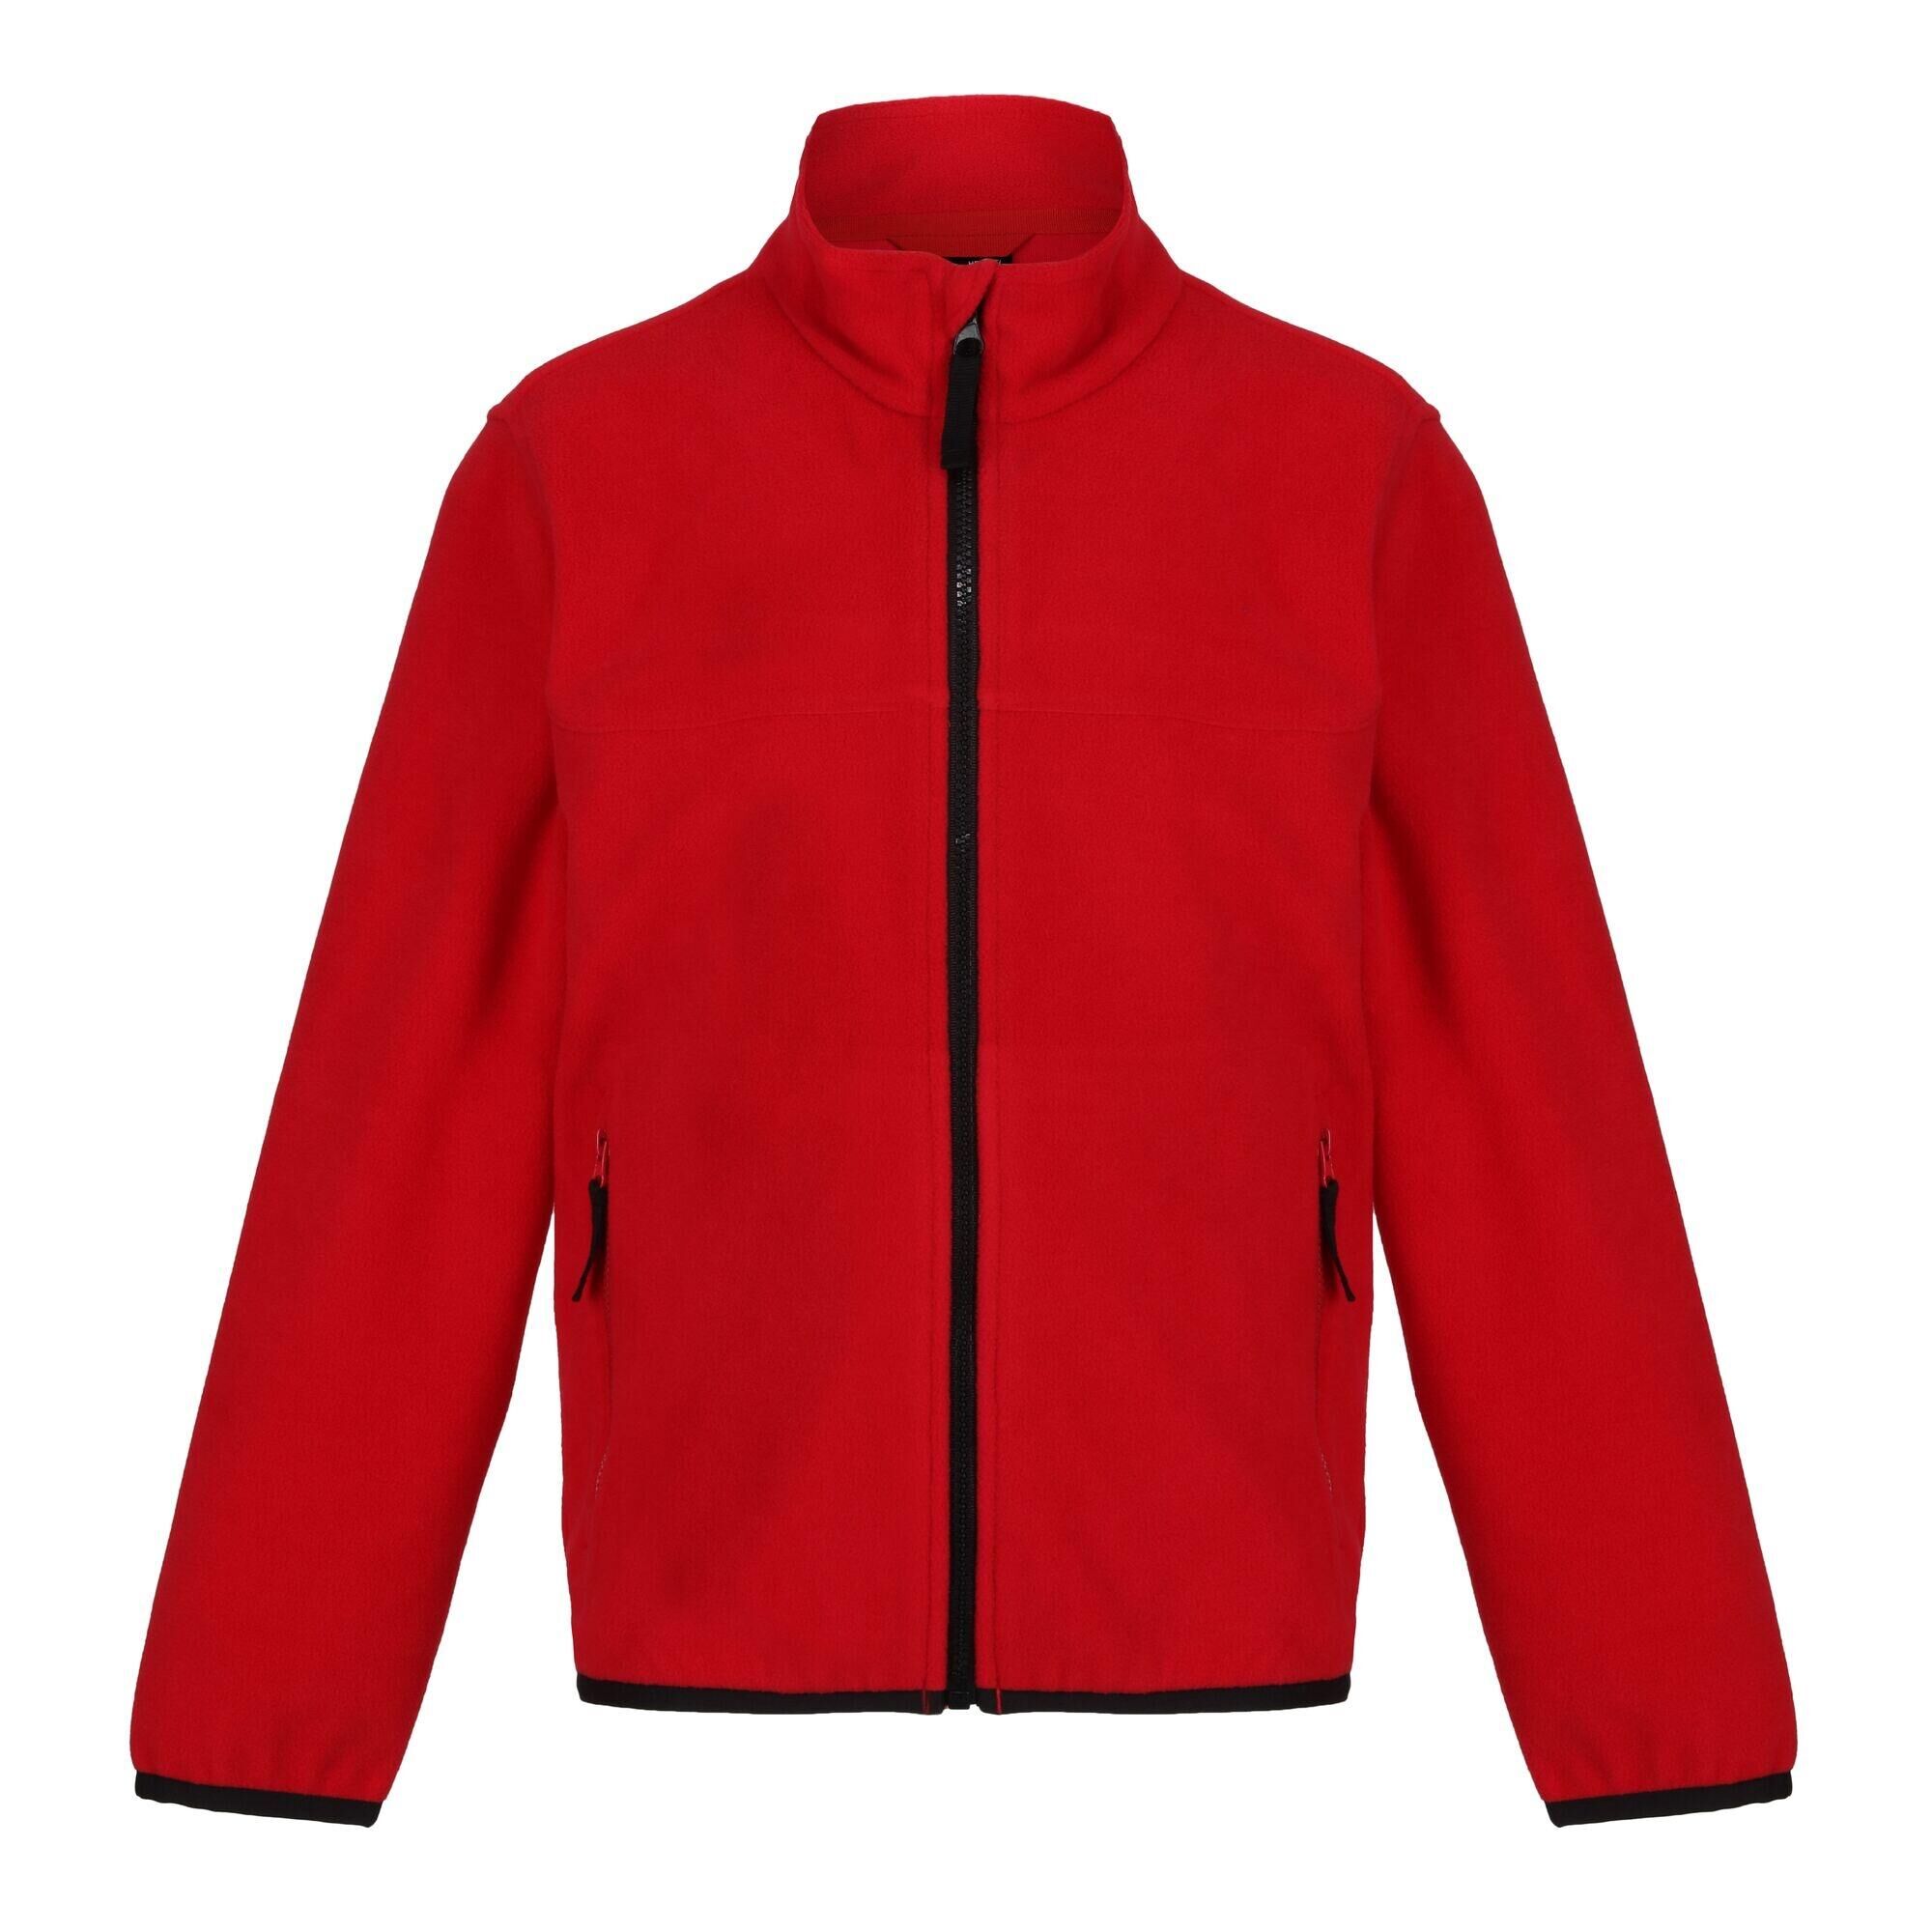 REGATTA Childrens/Kids Microfleece Full Zip Fleece Jacket (Classic Red)